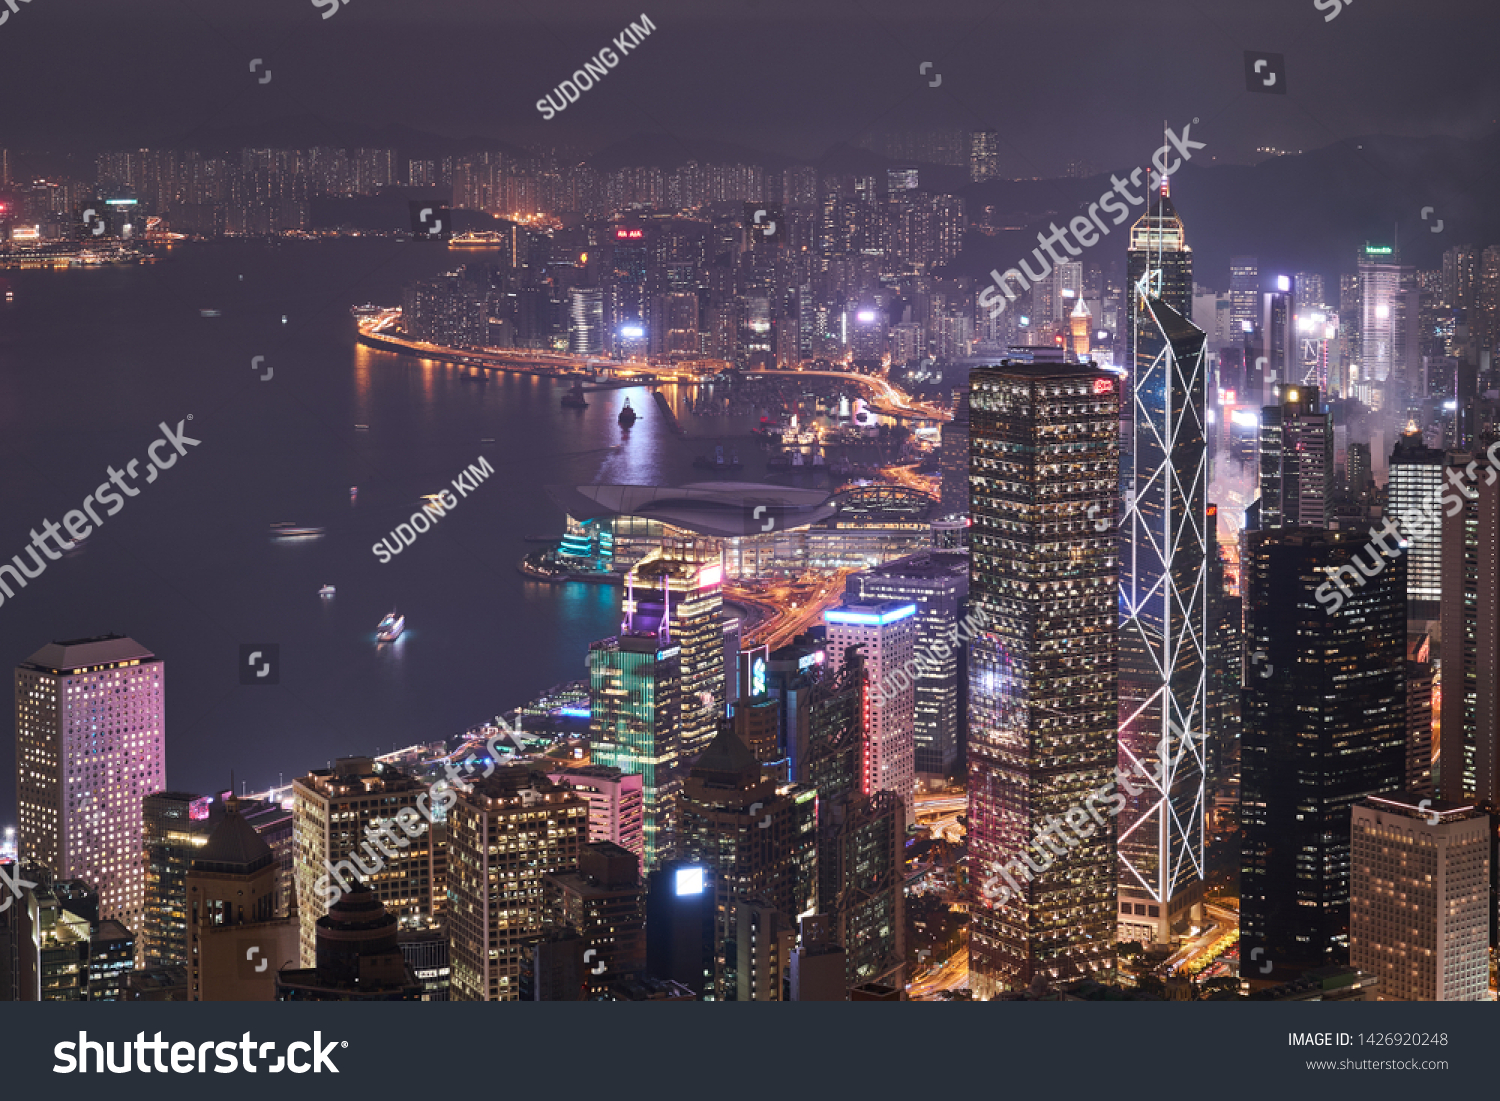 Lugard Road, Hong Kong - Jan 4, 2019 : The night view of Hong Kong from Lugard Road                   #1426920248